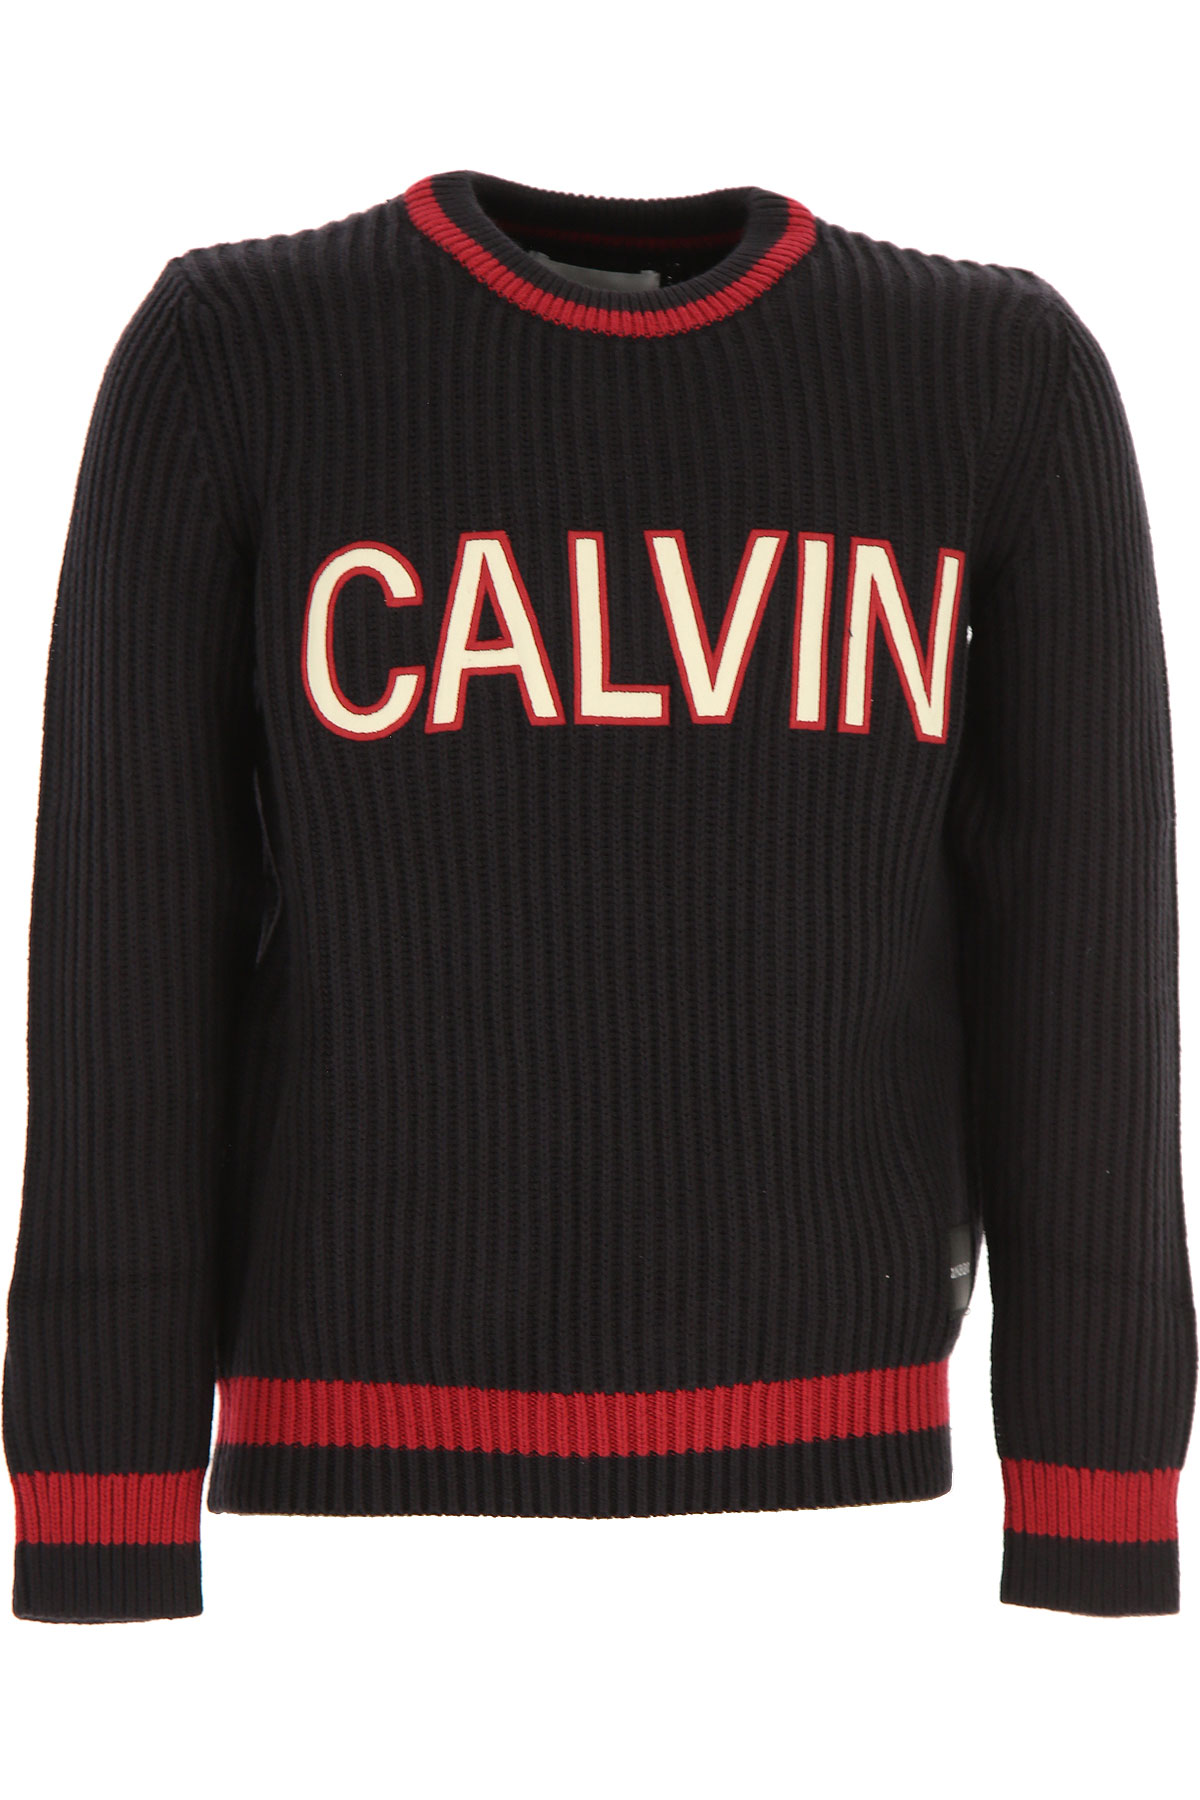 Calvin Klein Kinder Pullover für Jungen Günstig im Sale, B, Baumwolle, 2017, 10Y 12Y 14Y 16Y 4Y 6Y 8Y